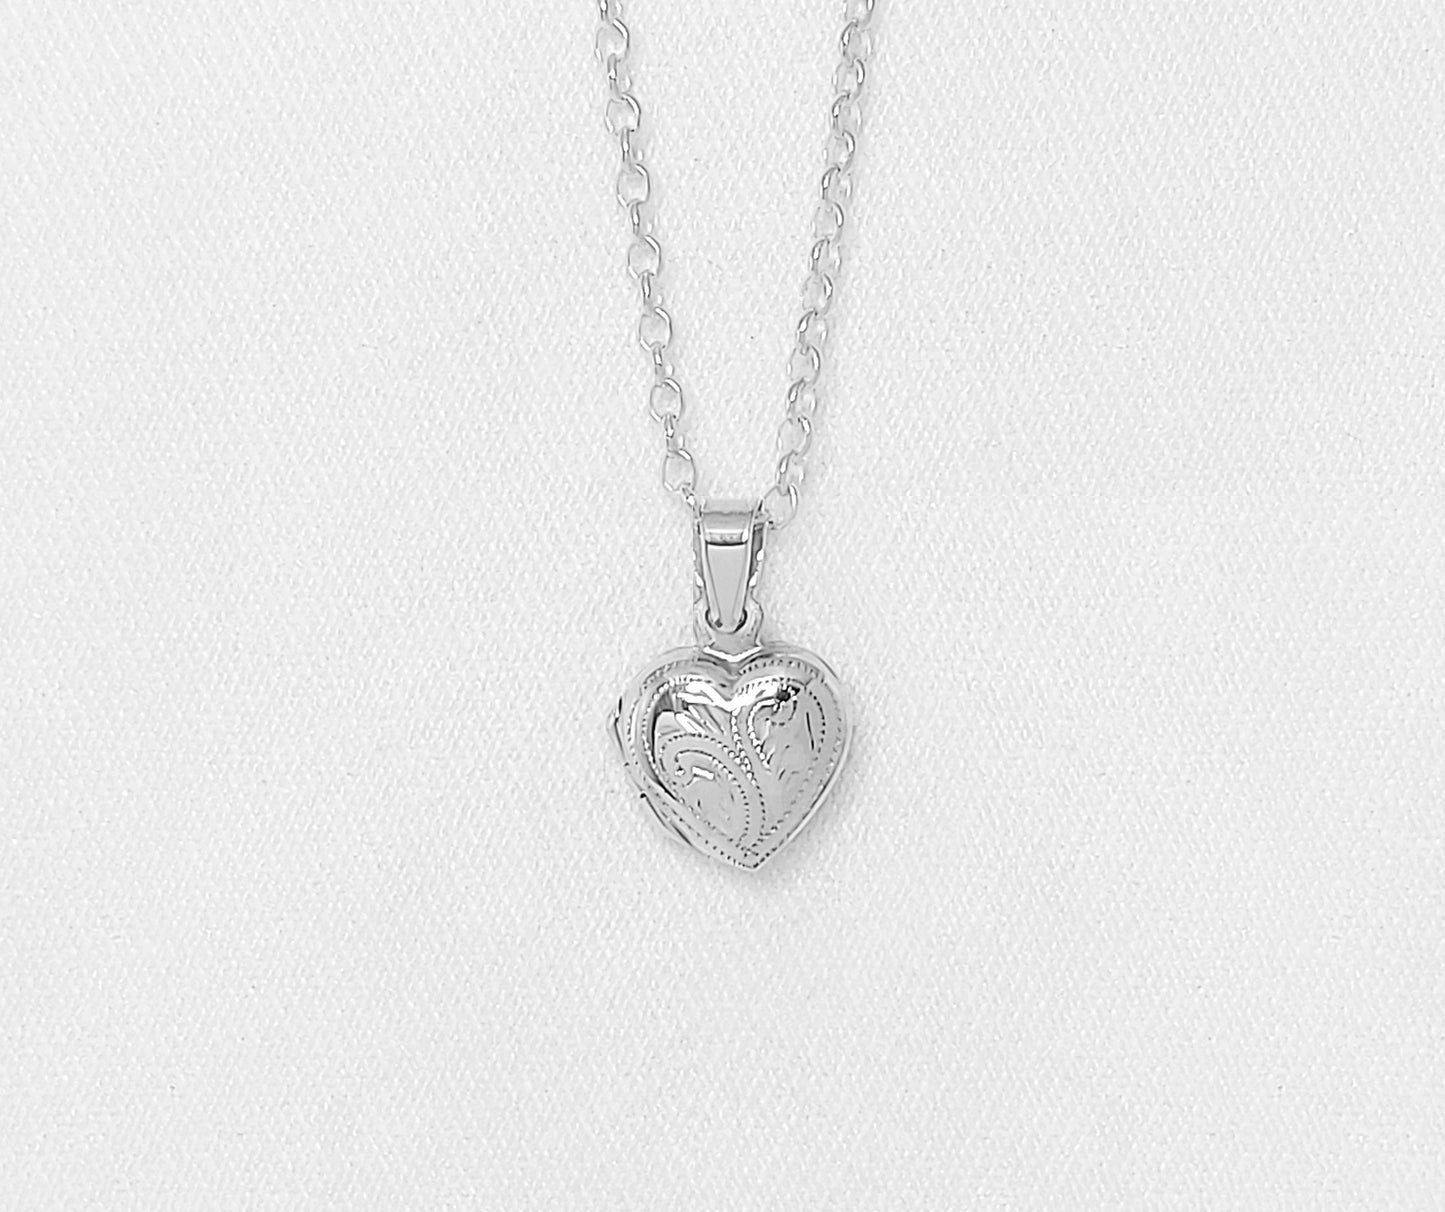 sterling silver heart locket.